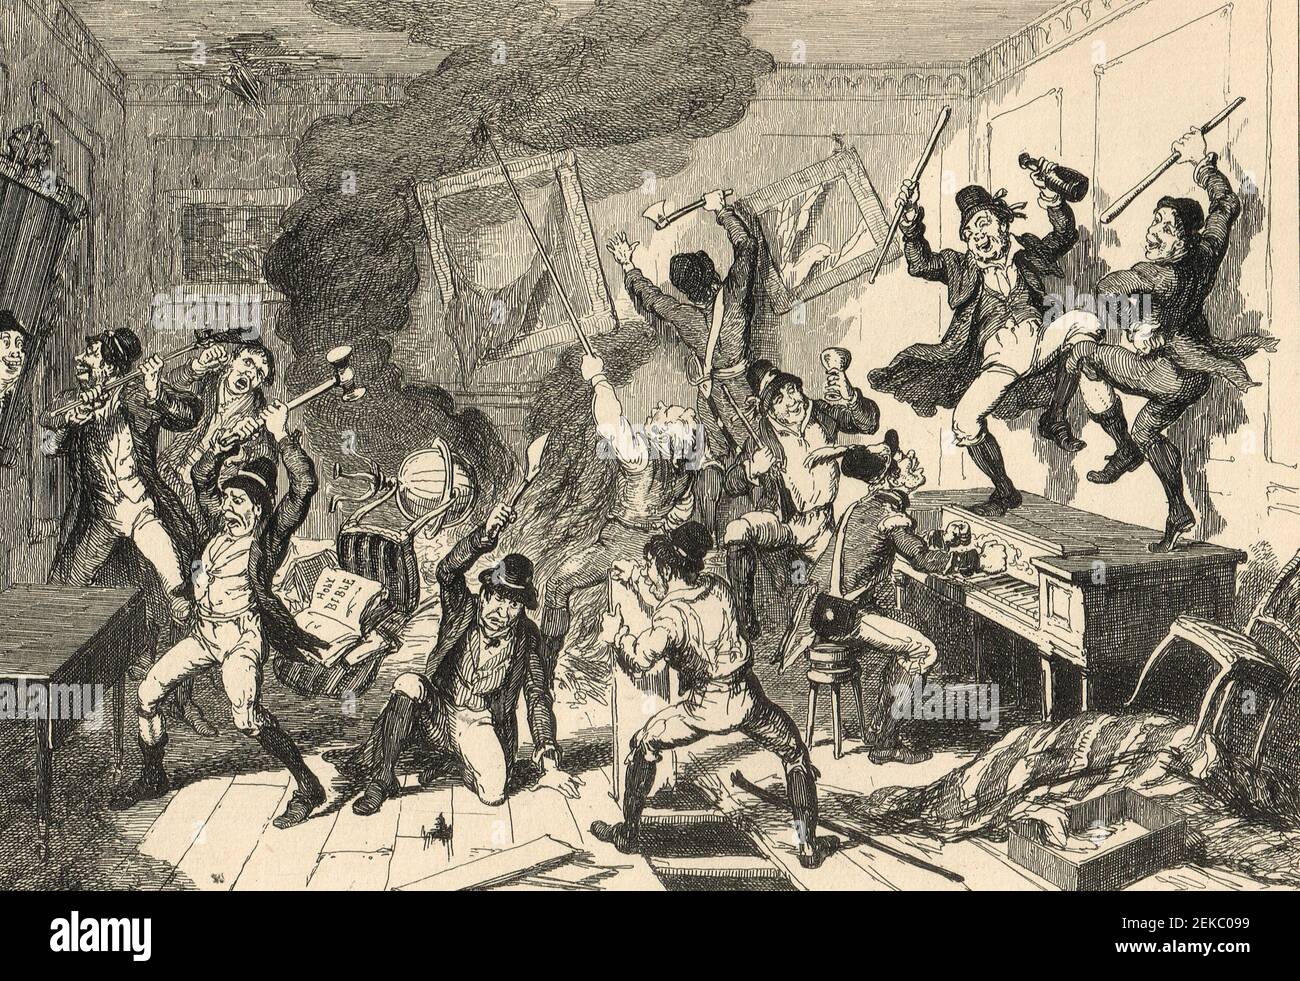 Rebelles détruisant une maison et des meubles, pendant la rébellion irlandaise de 1798 Banque D'Images